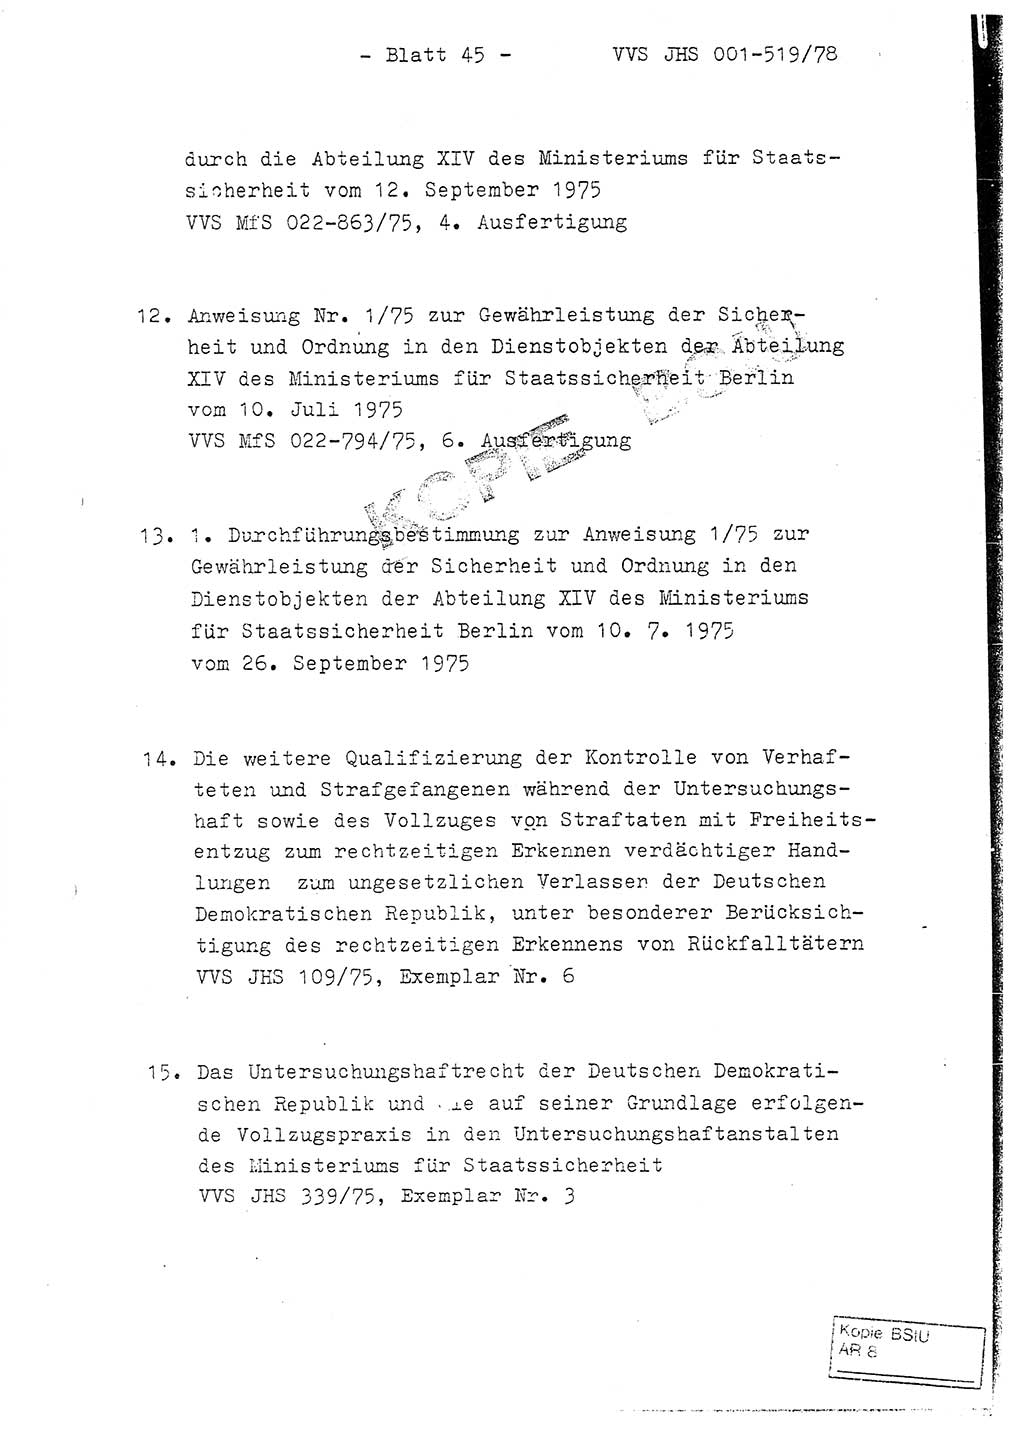 Fachschulabschlußarbeit Hauptmann Alfons Lützelberger (Abt. ⅩⅣ), Ministerium für Staatssicherheit (MfS) [Deutsche Demokratische Republik (DDR)], Juristische Hochschule (JHS), Vertrauliche Verschlußsache (VVS) 001-519/78, Potsdam 1978, Blatt 45 (FS-Abschl.-Arb. MfS DDR JHS VVS 001-519/78 1978, Bl. 45)